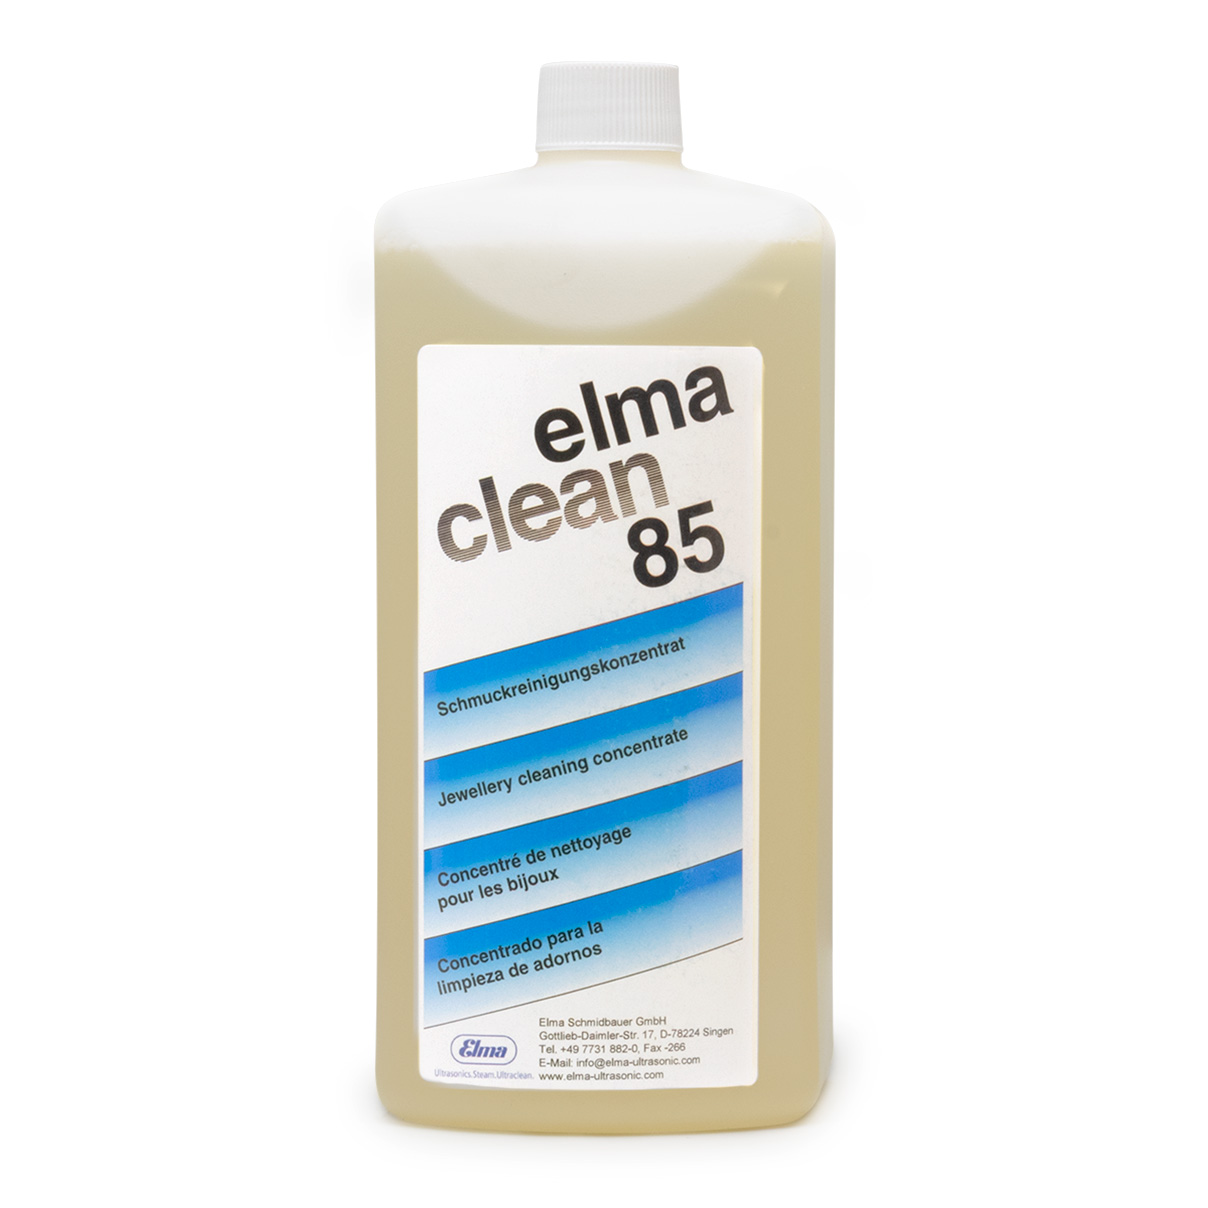 Elma Clean 85 concentré, pour la bijouterie, 1 l